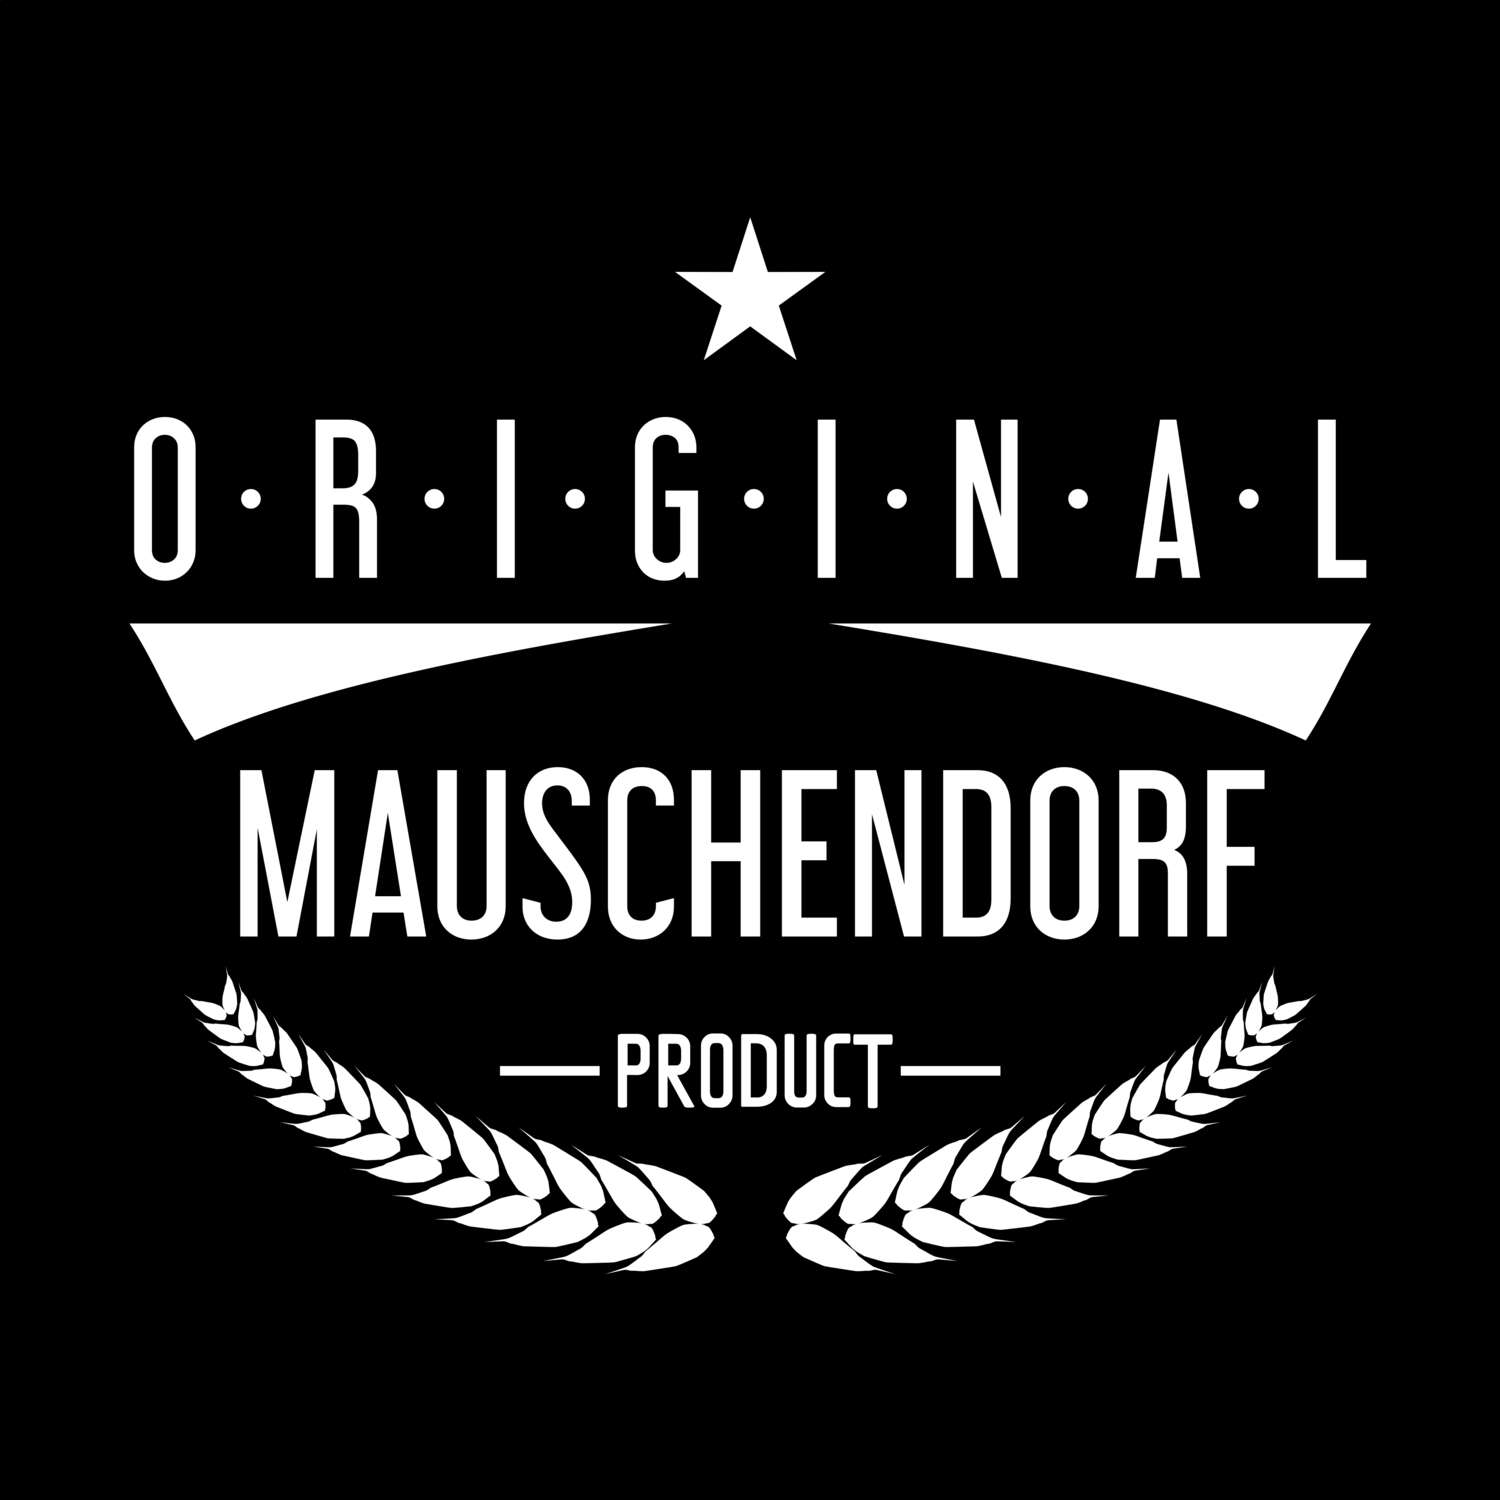 Mauschendorf T-Shirt »Original Product«